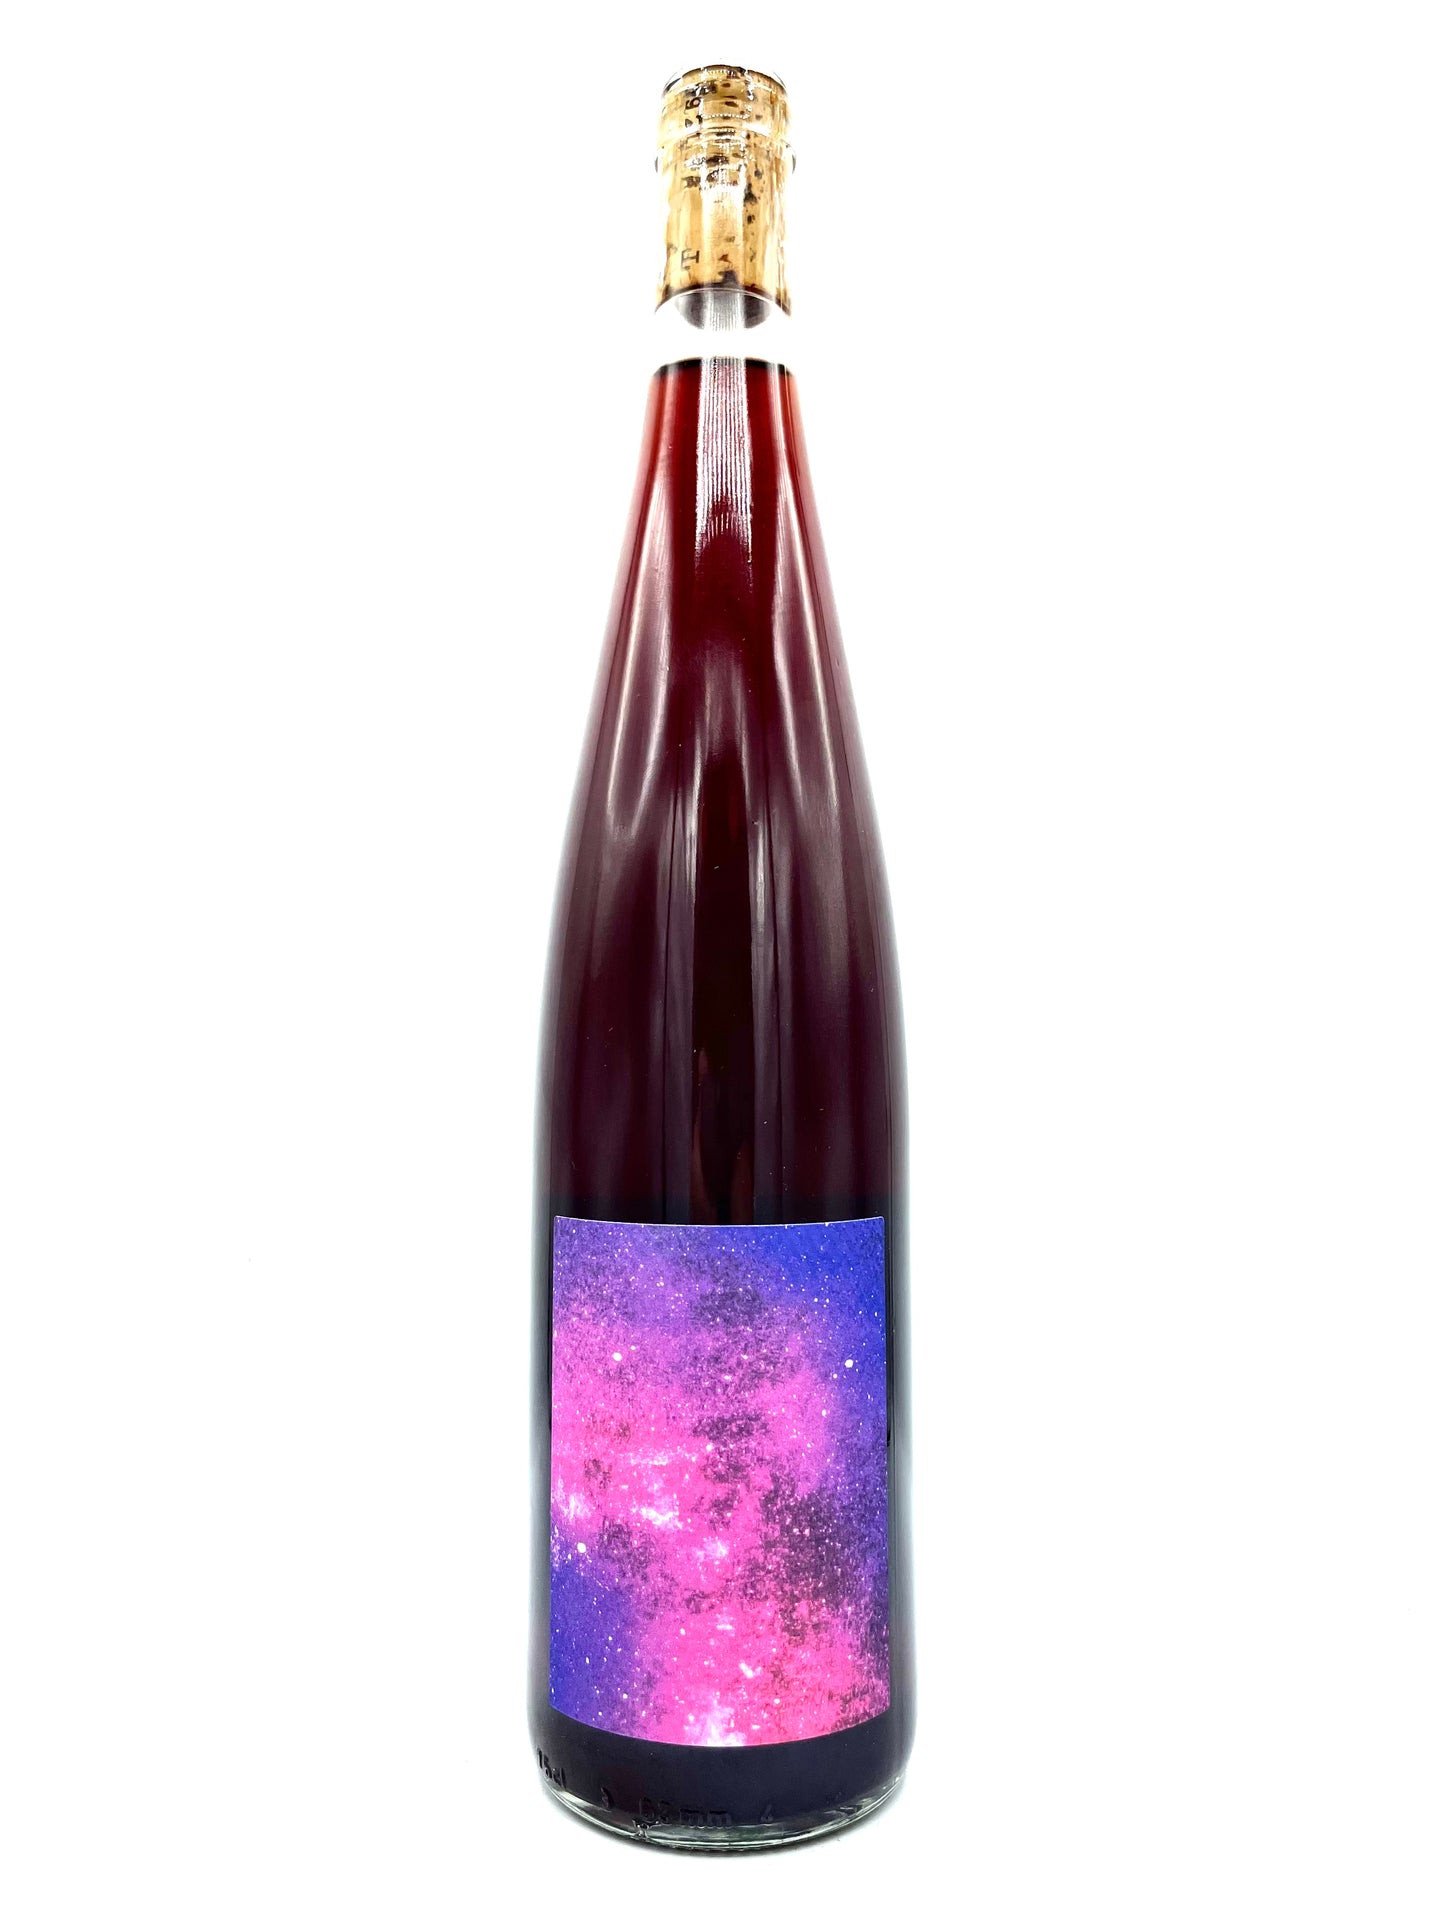 Les Vins Pirouettes 'Ultra Violet' Vin d'Alsace 2020